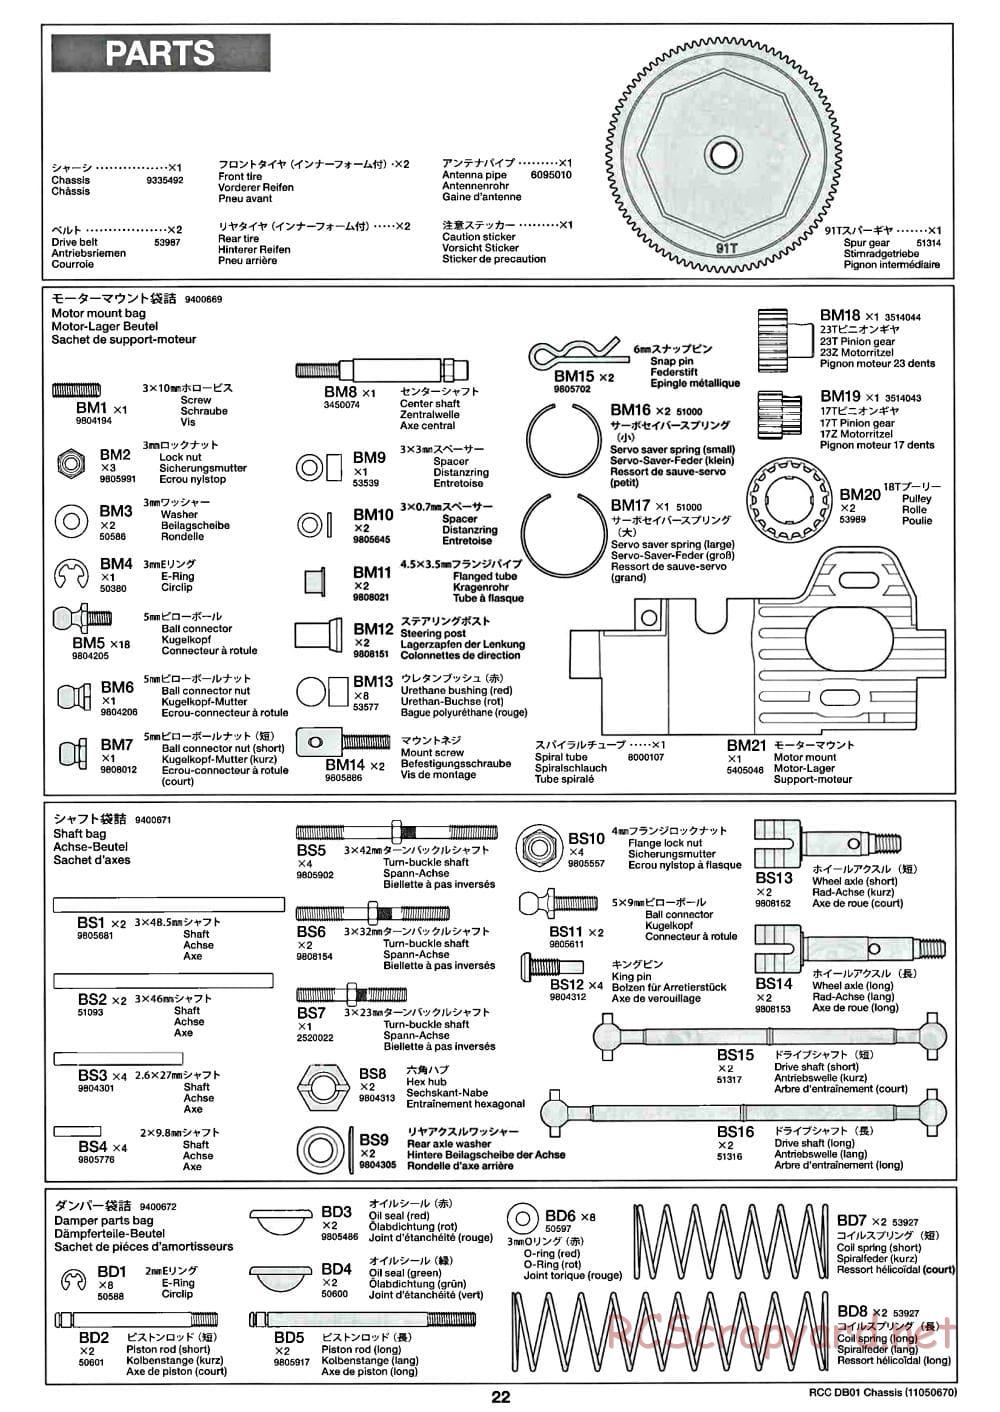 Tamiya - DB-01 Chassis - Manual - Page 22